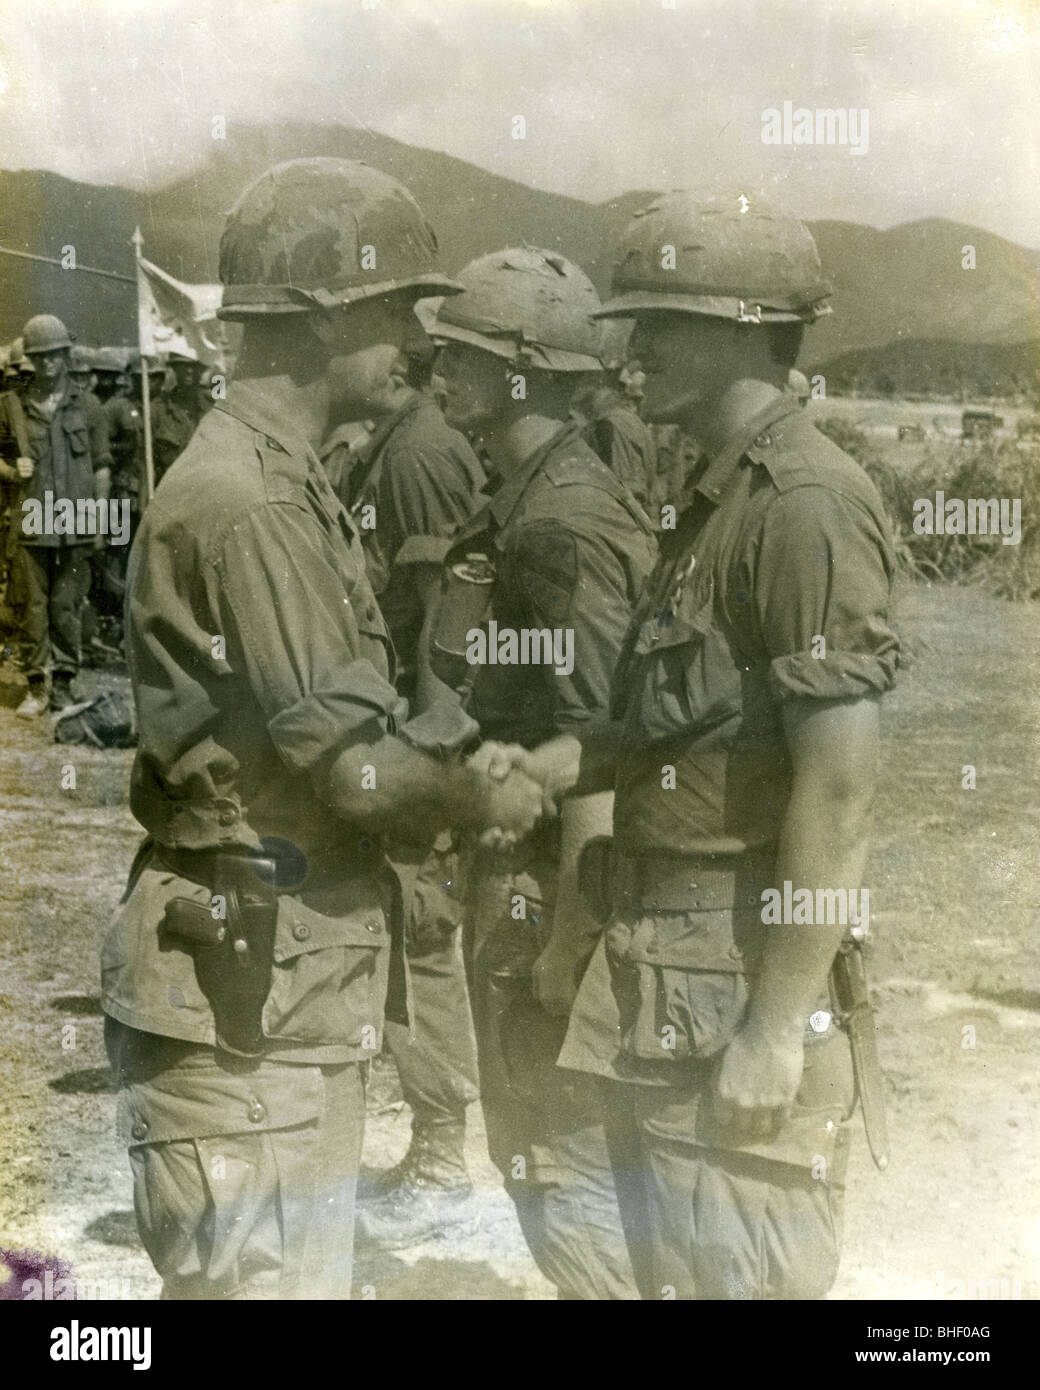 General Norton schüttelt ein Kavallerist Hand während der Zeremonie Auszeichnungen und Dekorationen. Vietnam Krieg 1. Kavallerie Juli 1966 bis November Stockfoto